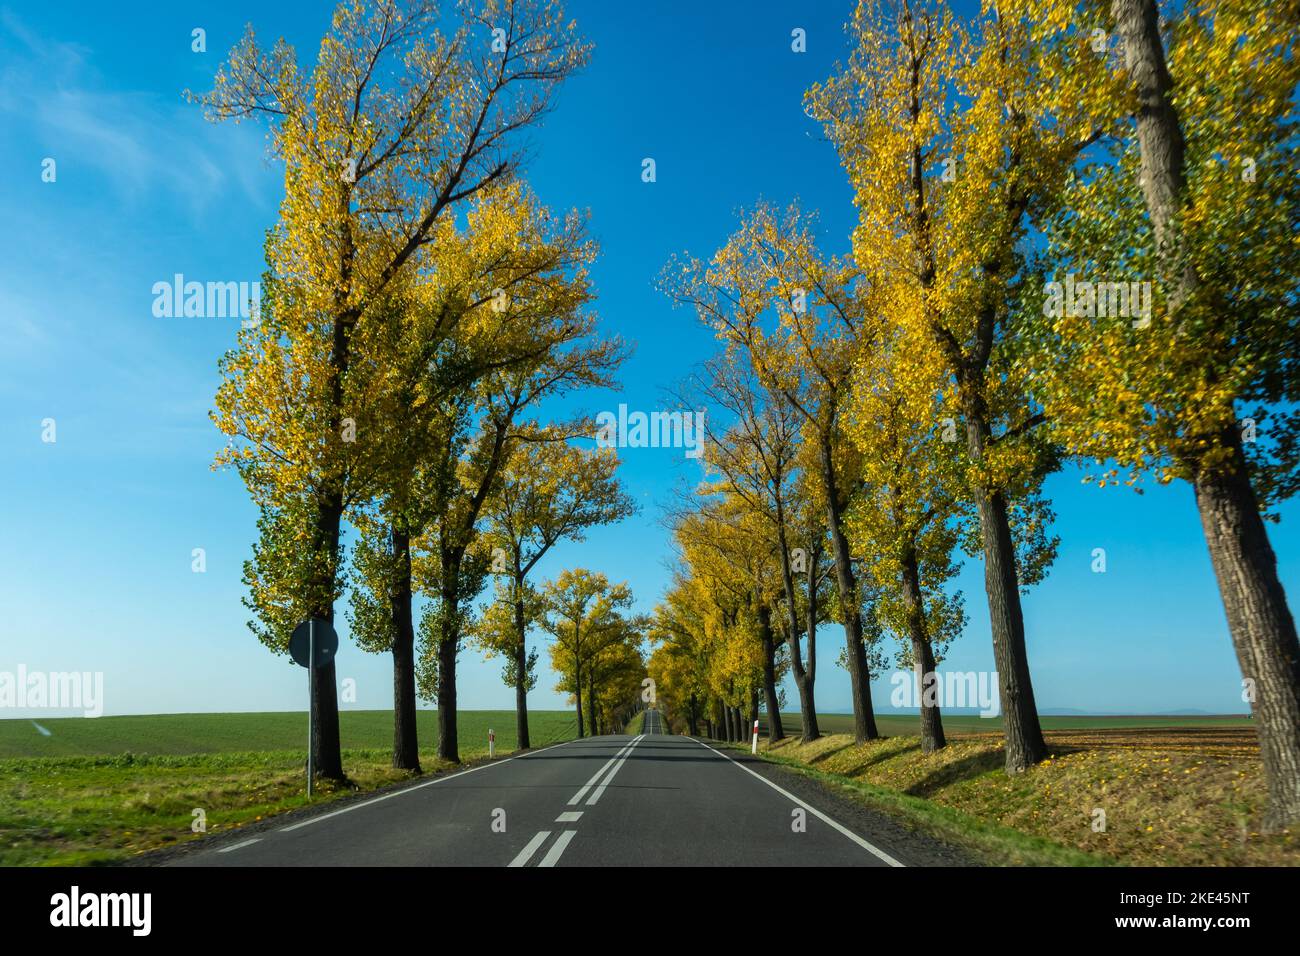 Schöne Straße mit Herbstbäumen mit goldenen Blättern. Perfekter blauer Himmel. Das Foto wurde an einem sonnigen Tag von einem Auto während der Fahrt aufgenommen. Stockfoto